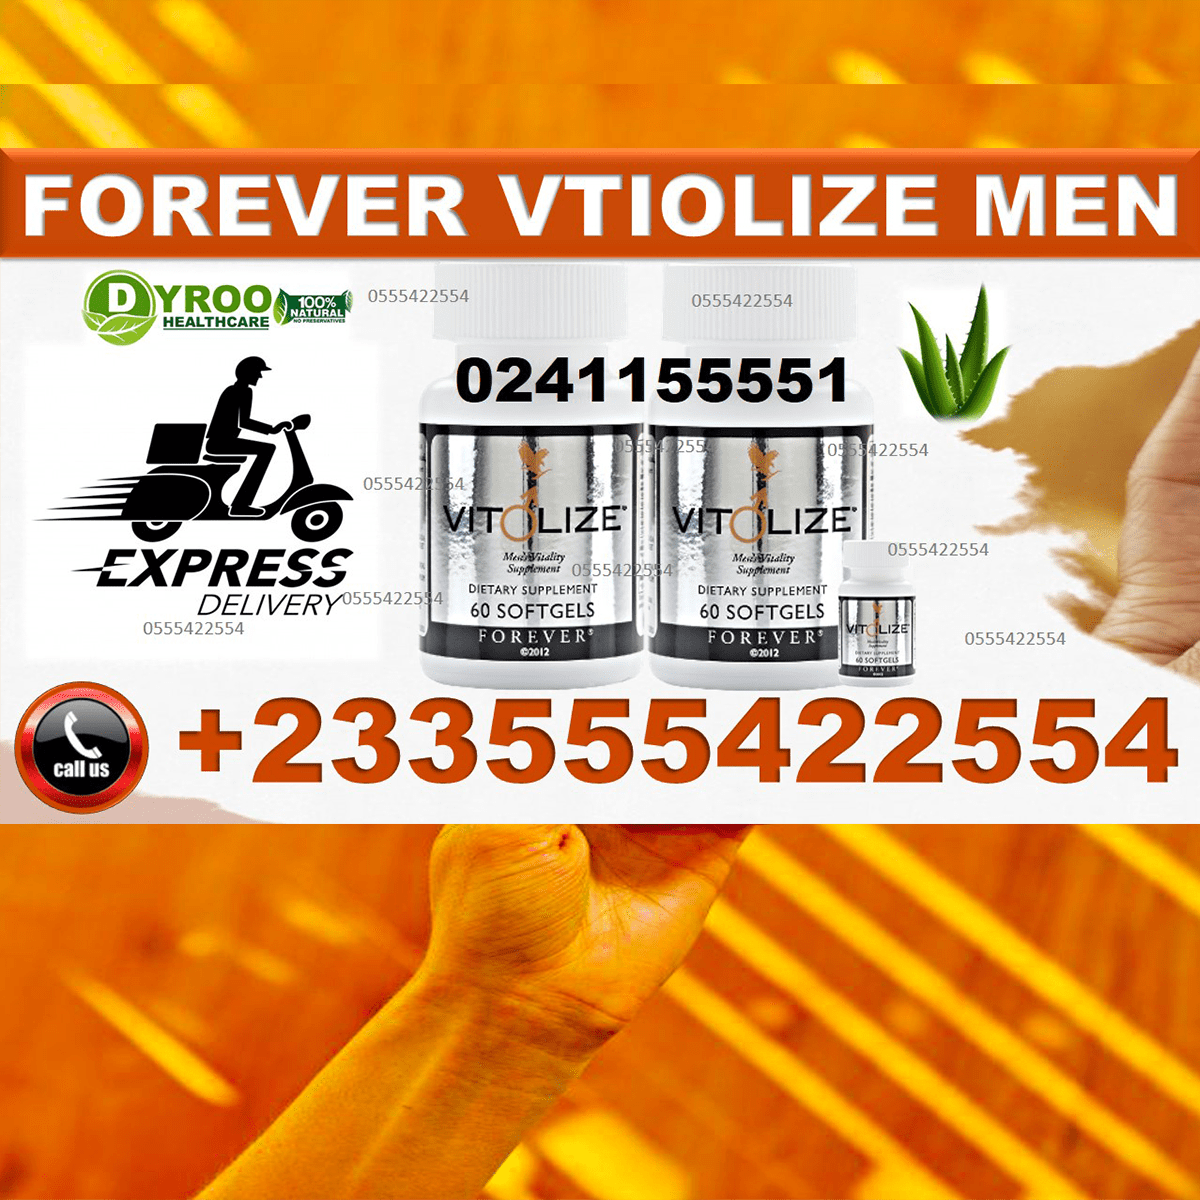 Forever Vitolize for Men in Ghana